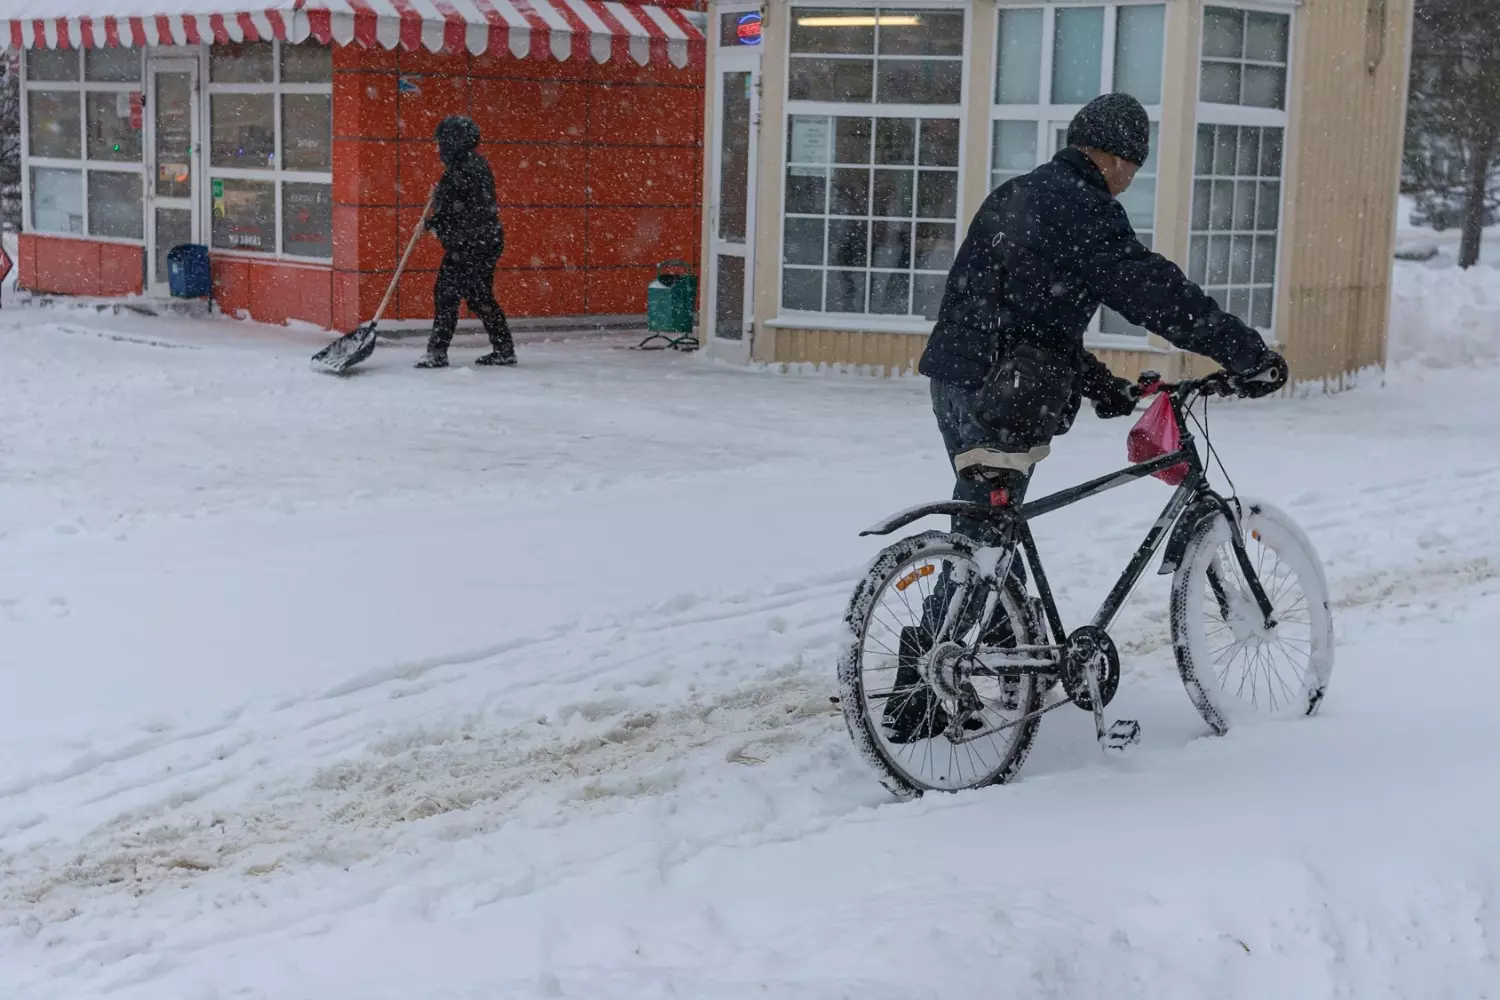 Несмотря на ненастье, находились смельчаки, не пожелавшие расставаться с велосипедами даже зимой...